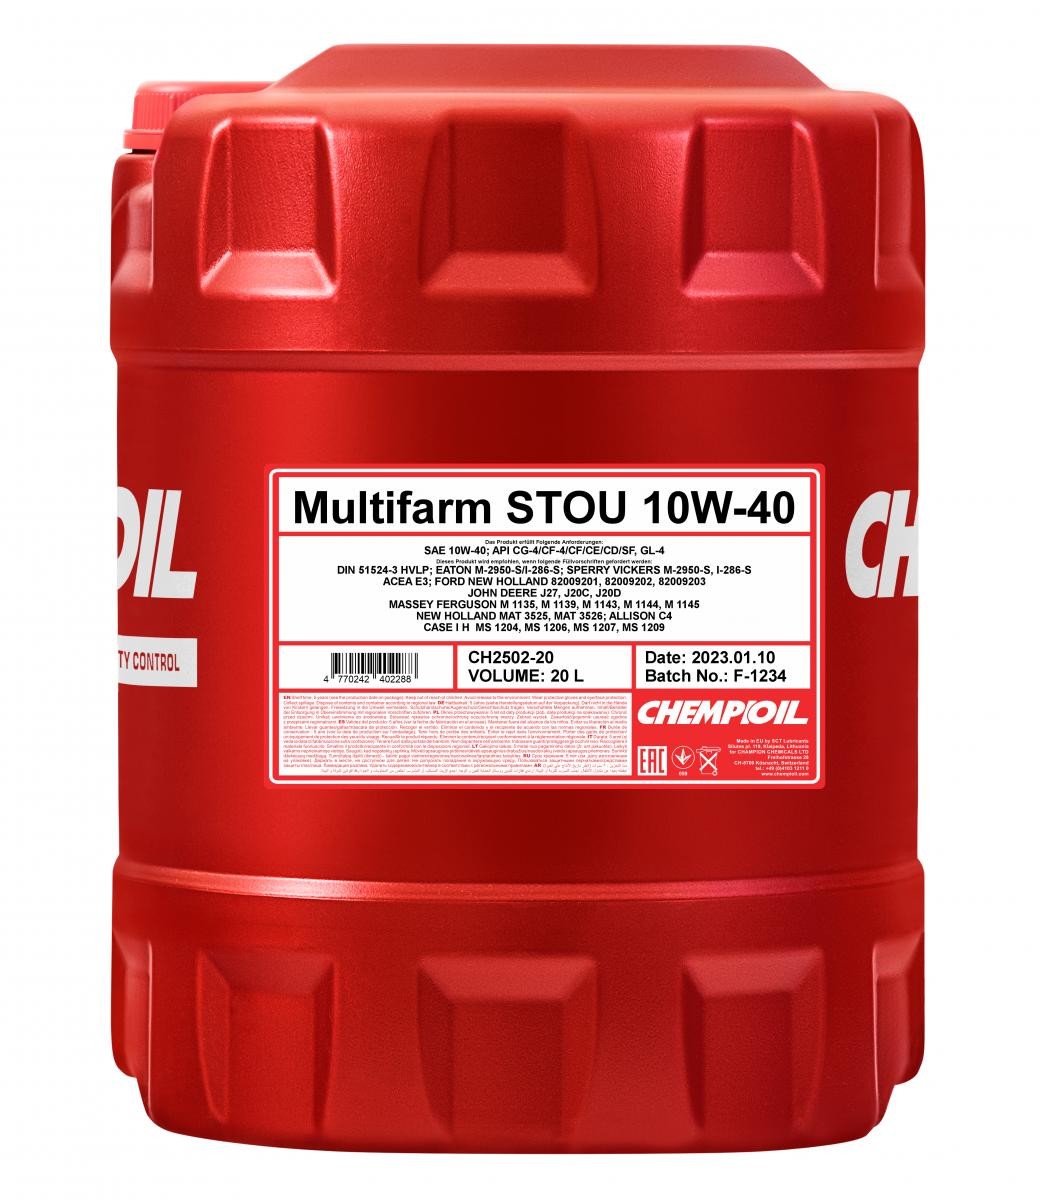 Car oil ALLISON C4 CHEMPIOIL - CH2502-20 Multifarm, STOU